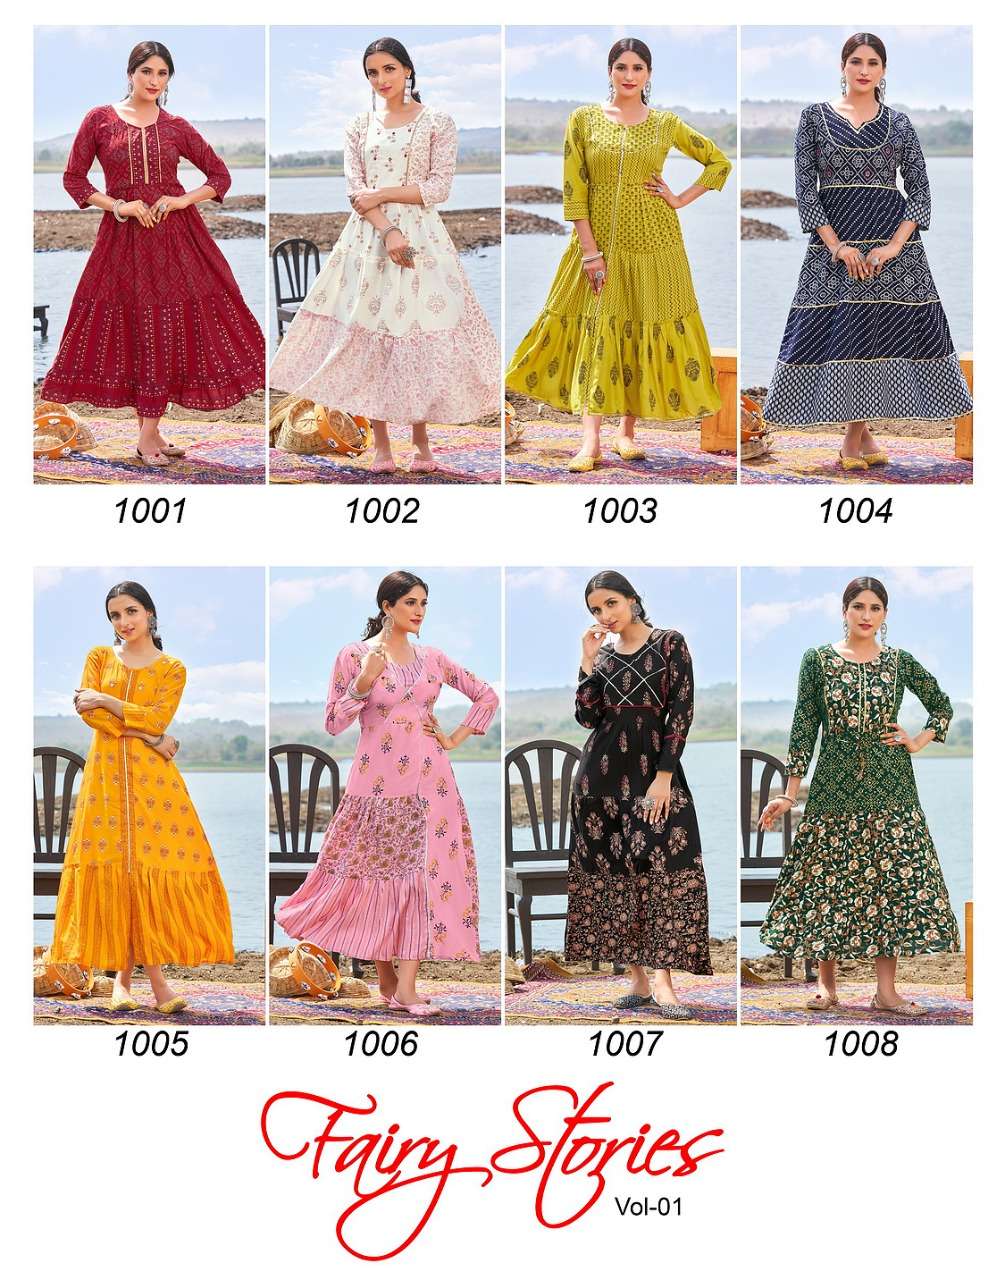 banwery fairy stories vol 1 1001-1008 series rayon long designer kurtis wholesale price surat